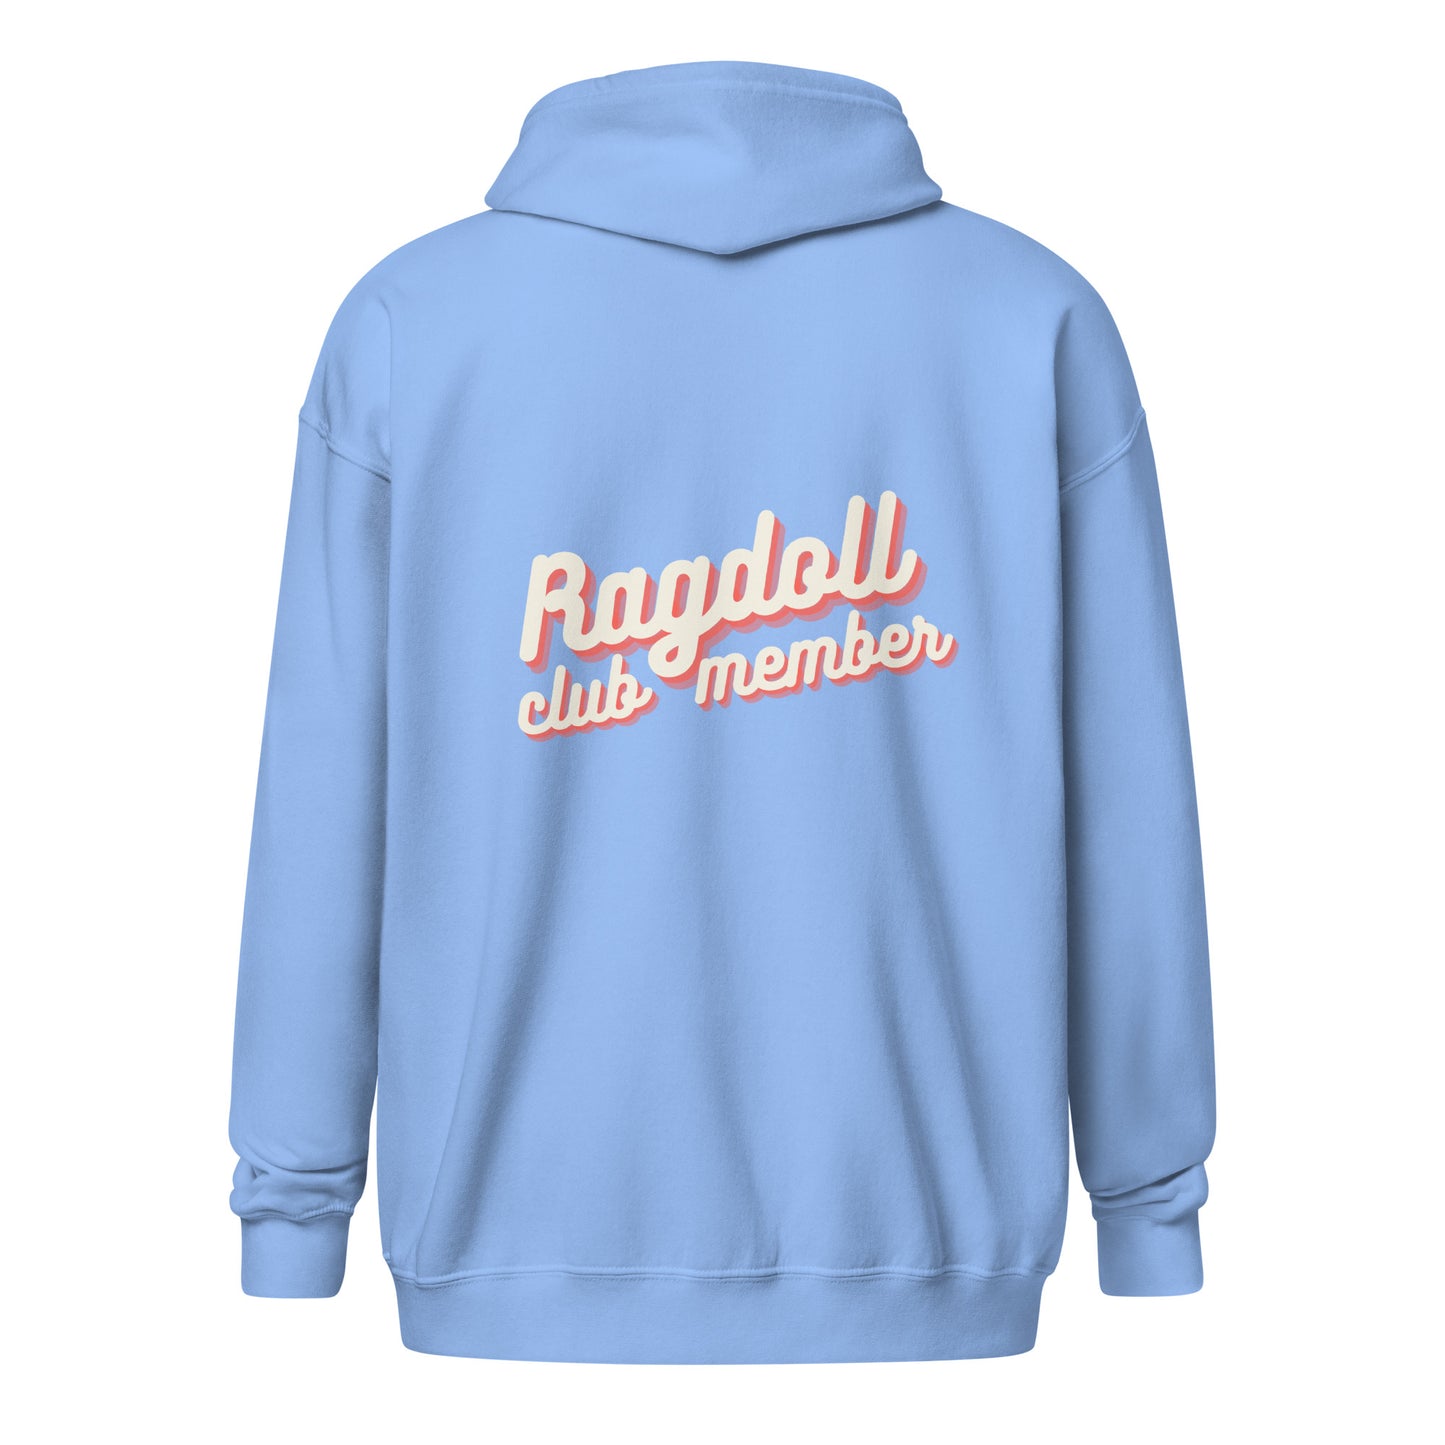 bluza rozpinana bluza z kapturem prezent dla kociary ragdoll club member błękitna 1